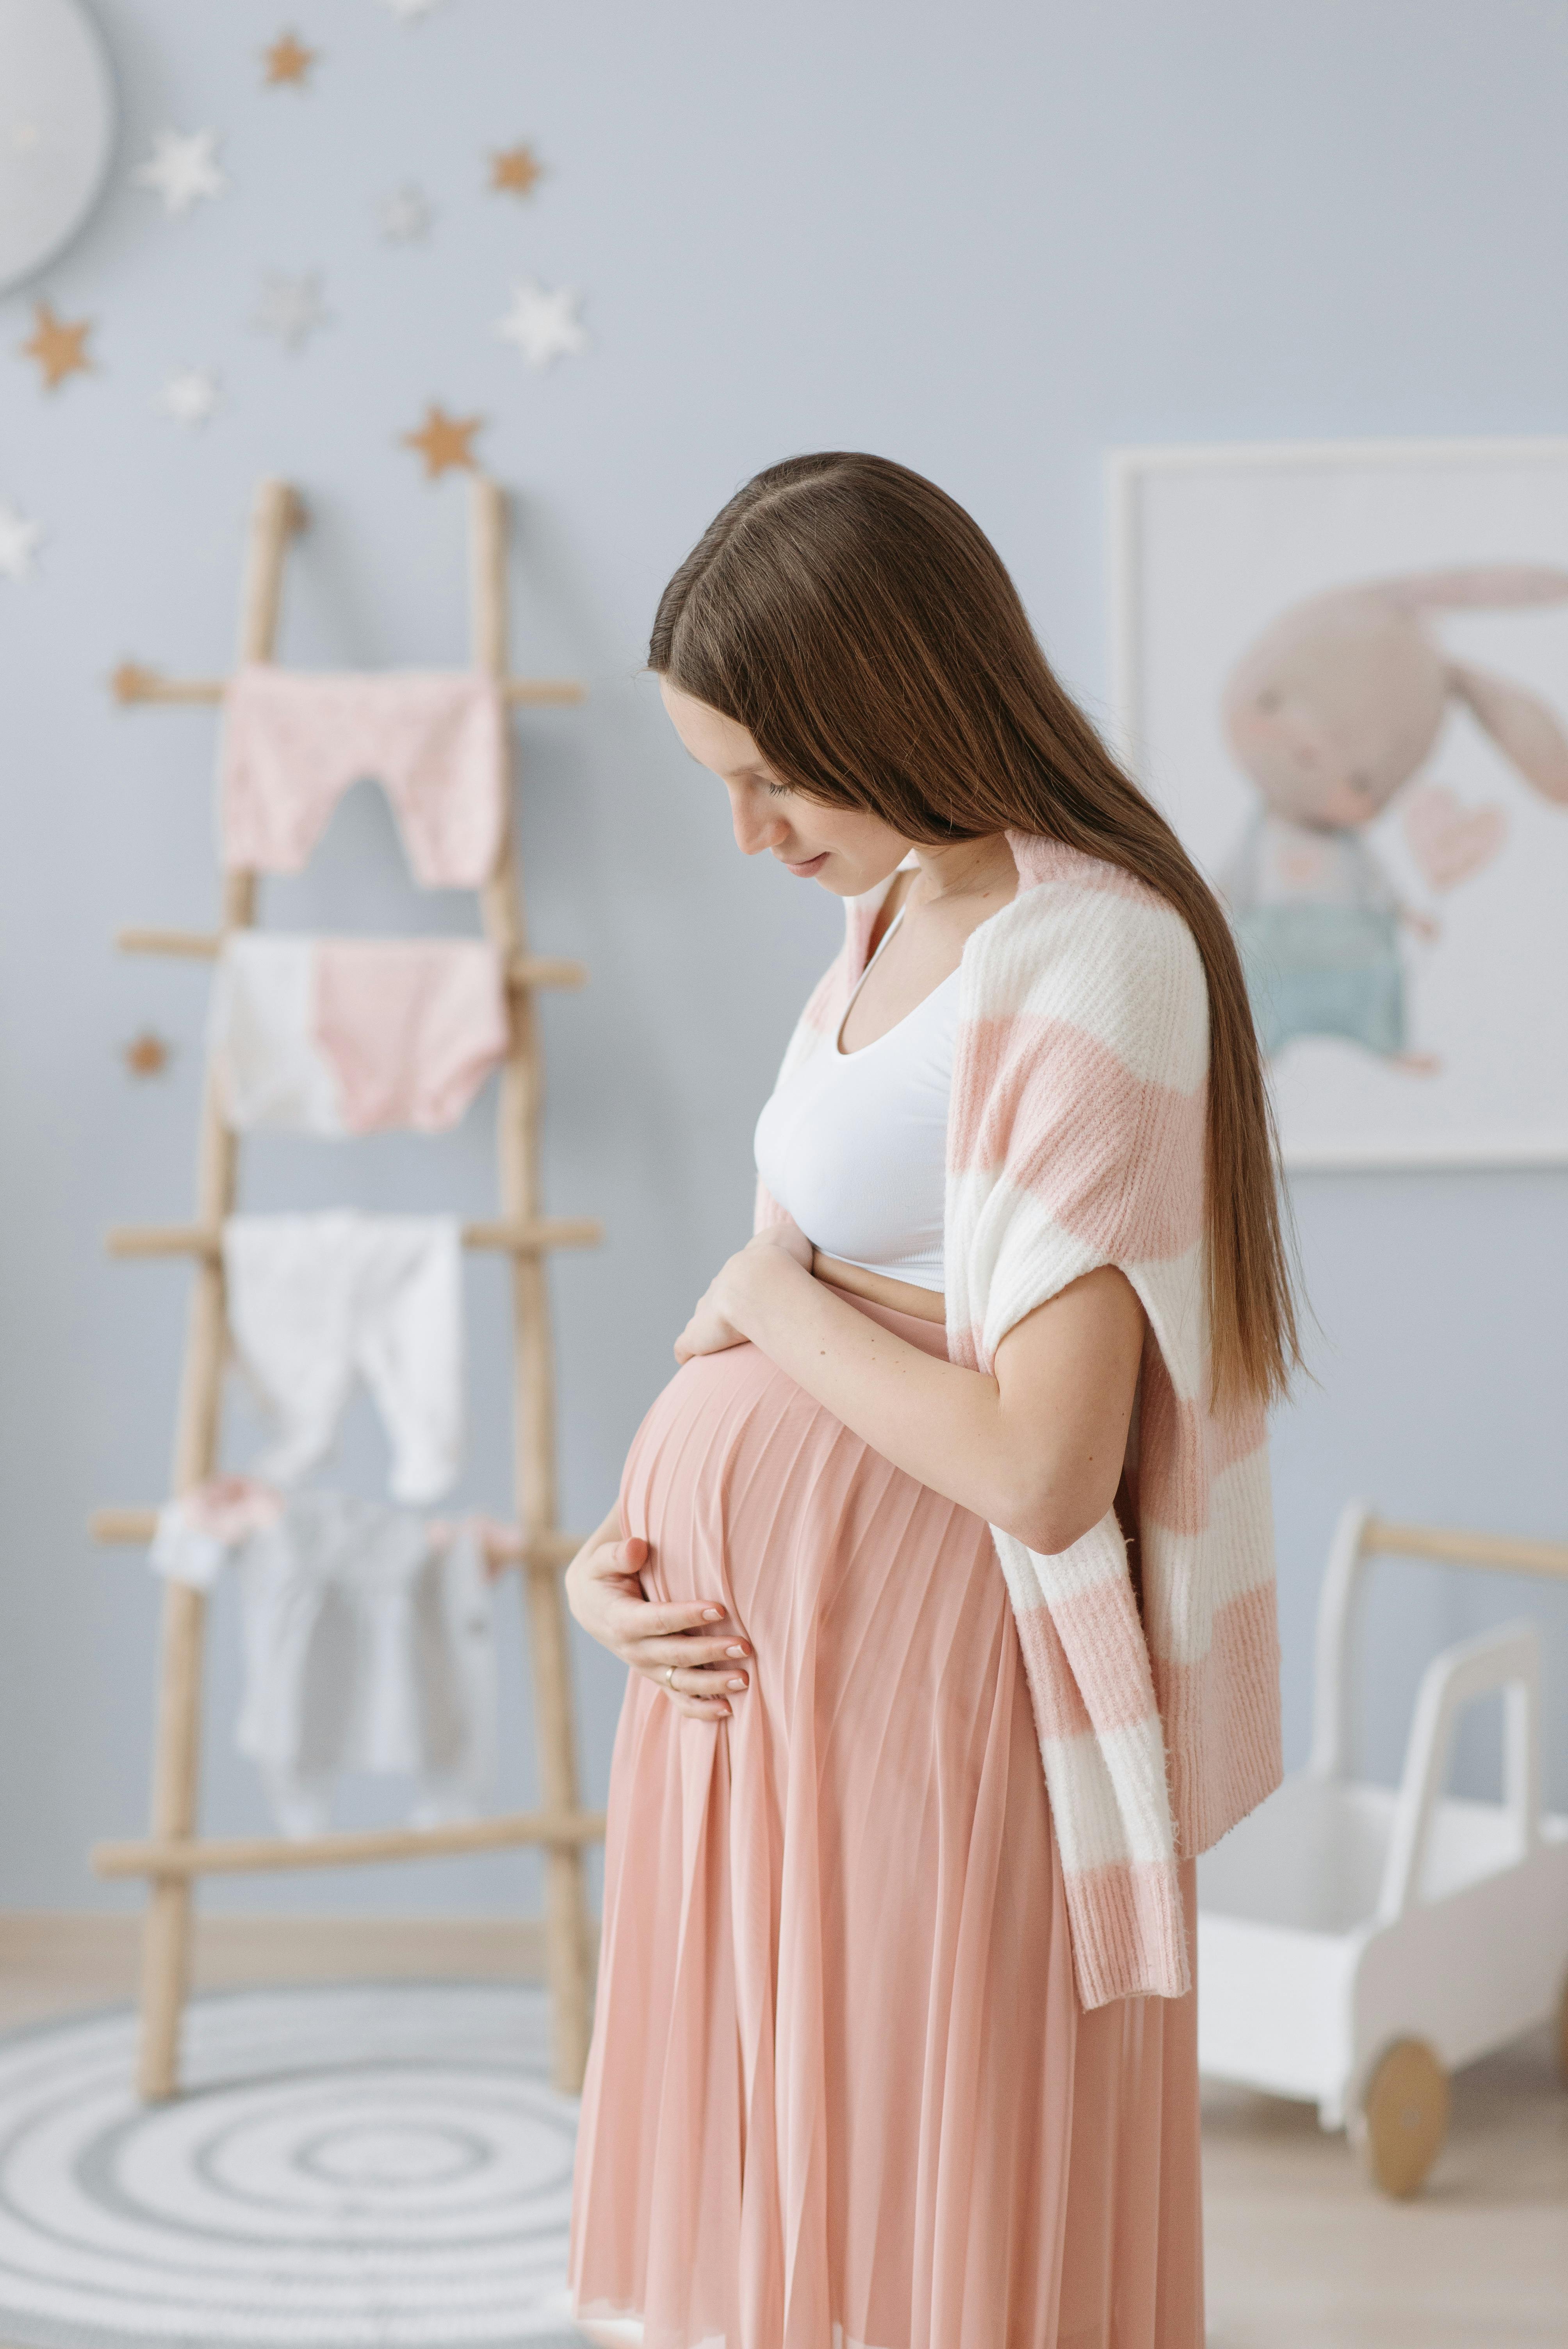 Une femme enceinte tenant son ventre dans la chambre de son futur bébé | Source : Pexels